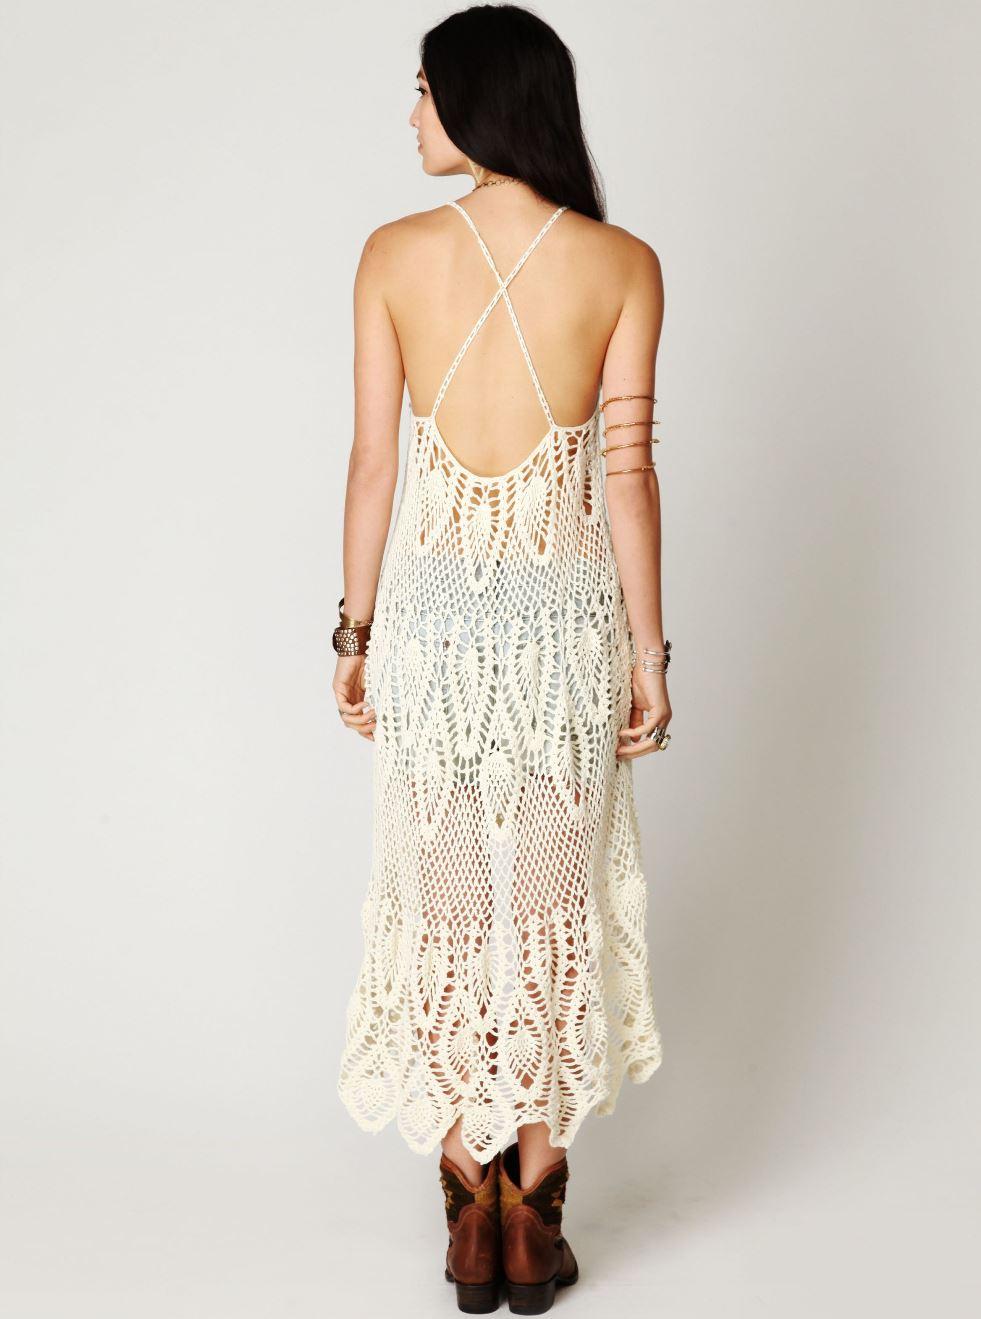 Designer crochet dress PATTERN, beach wedding dress crochet pattern ...